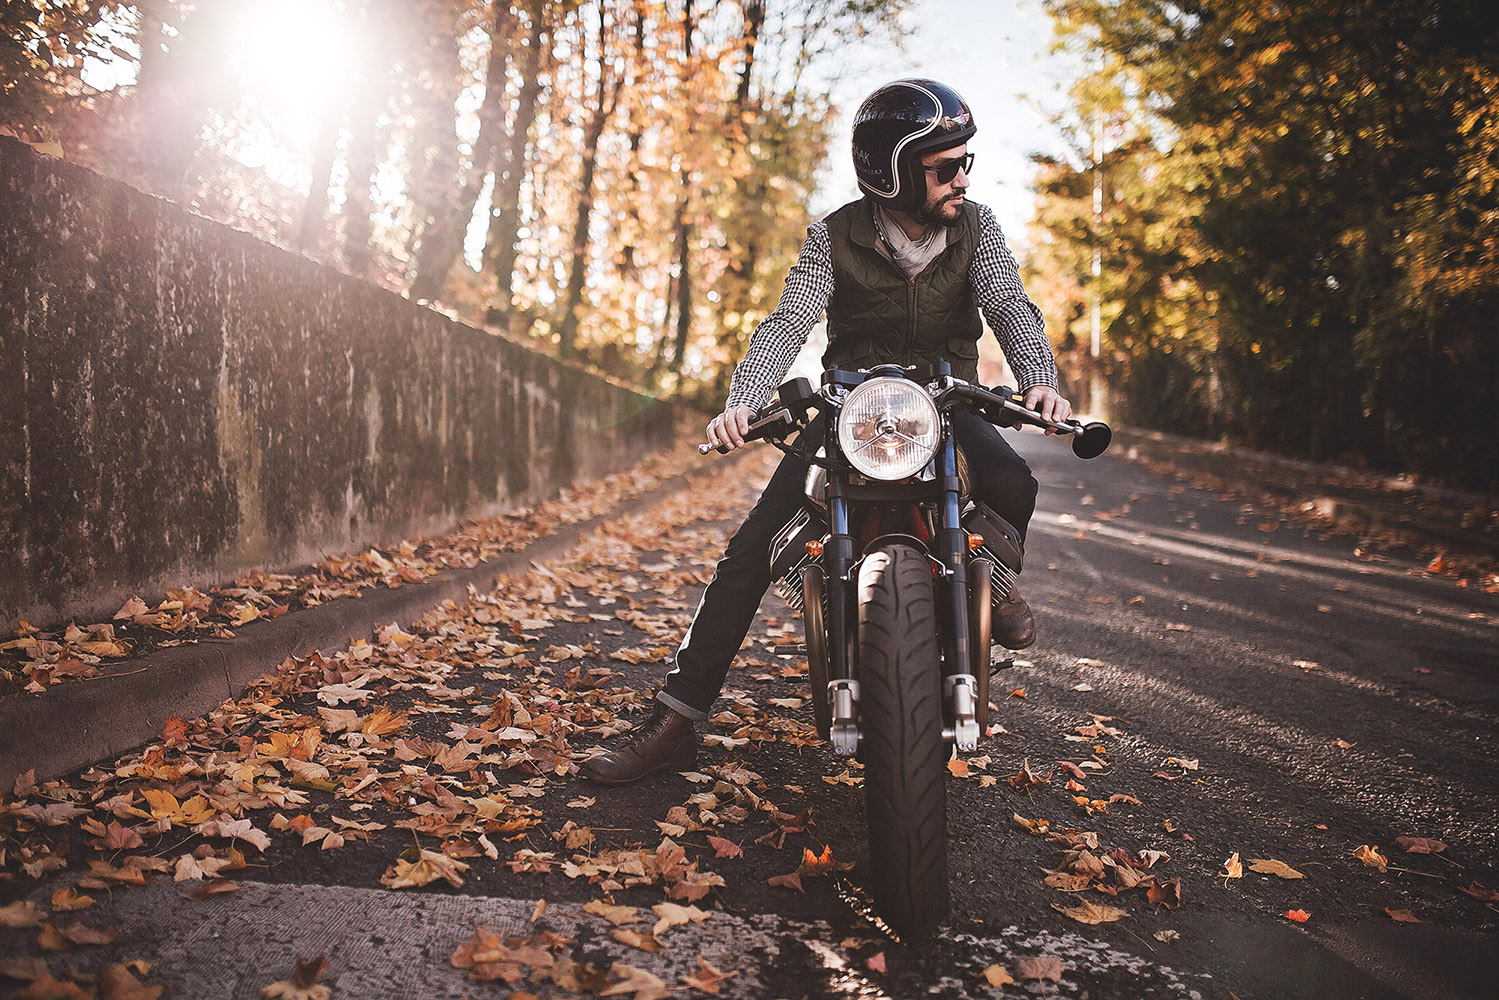 Moto Guzzi, V7 Racer, BAAK motorcycles